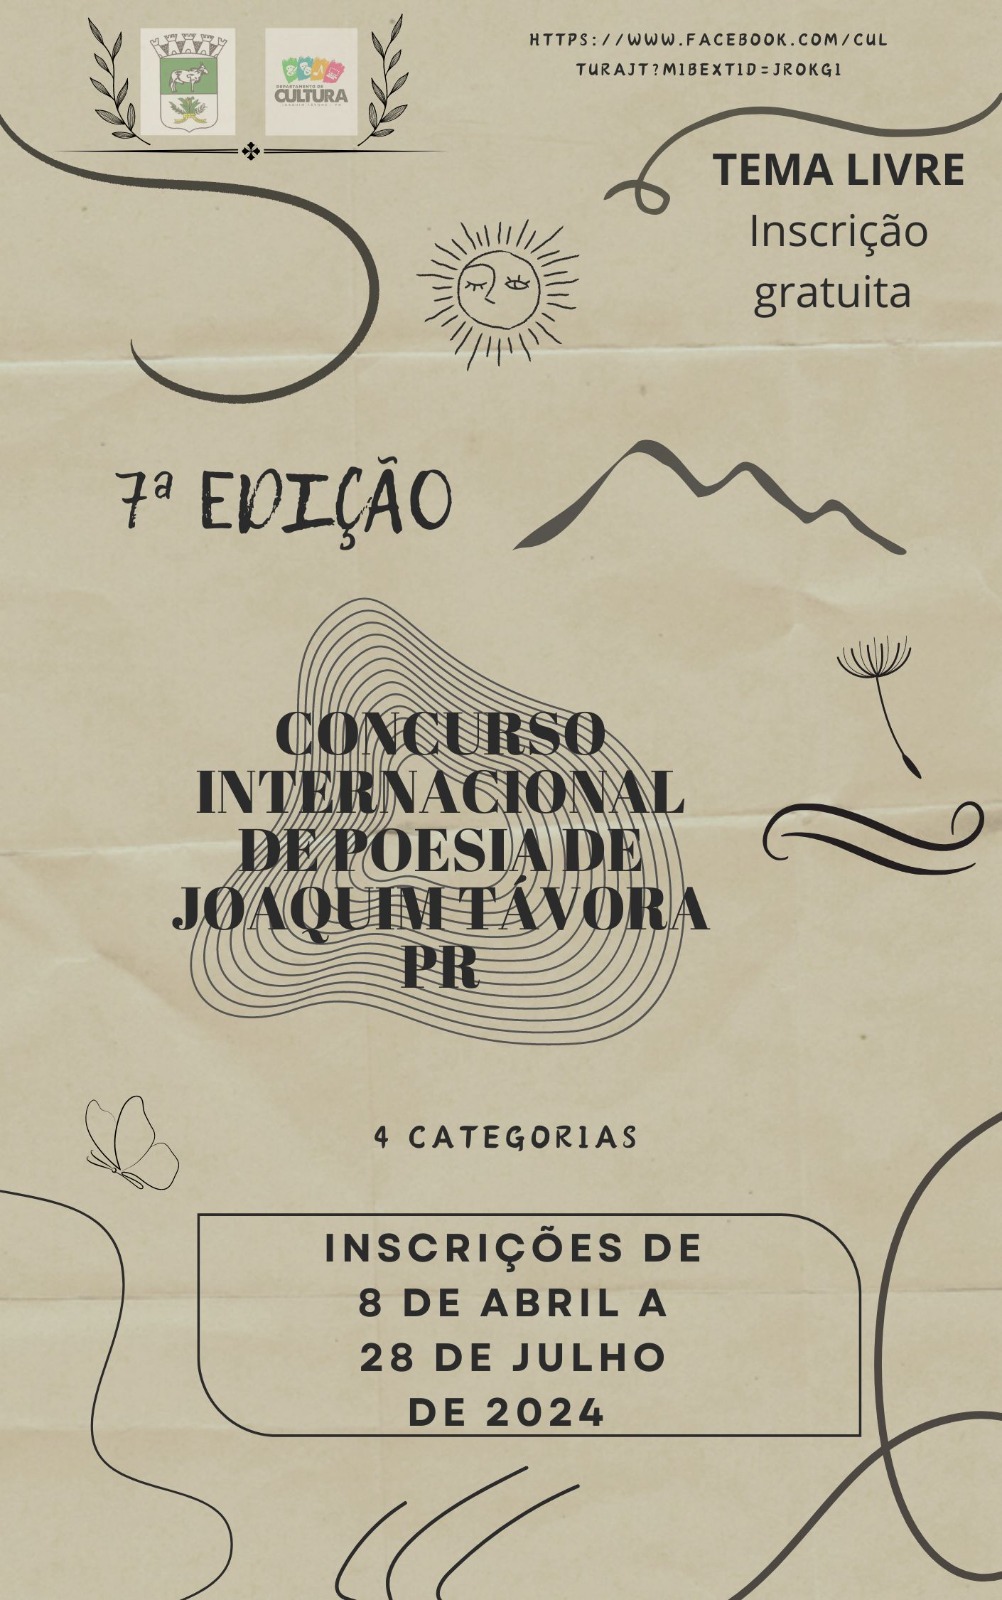 No momento você está vendo Edital: VII Concurso Internacional de Poesia de Joaquim Távora